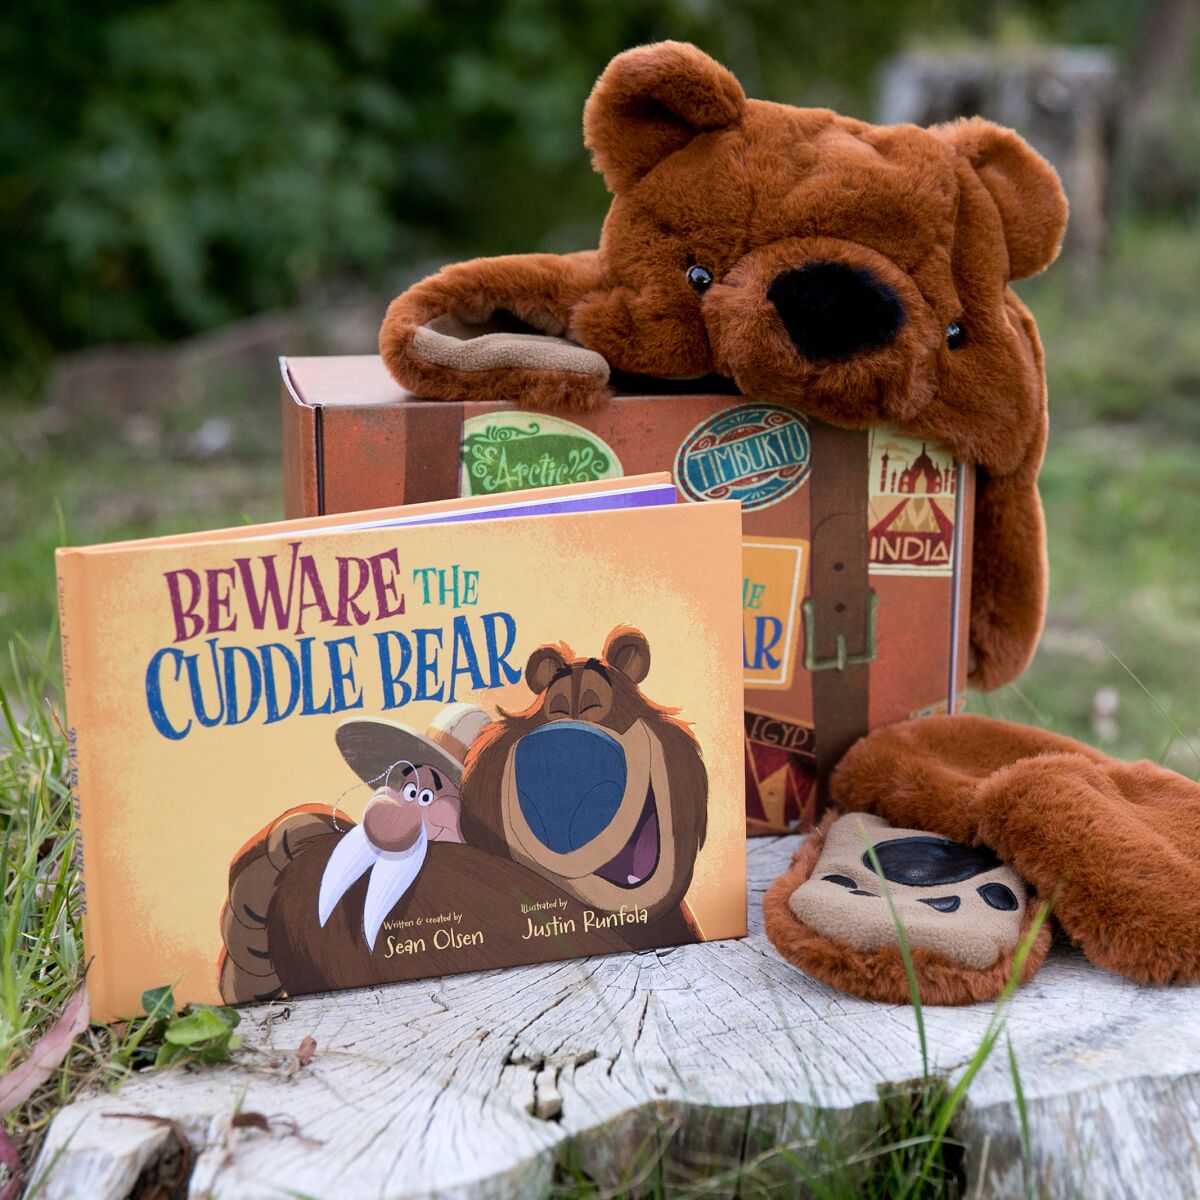 Sean Olsen’s children’s book Beware the Cuddle Bear.